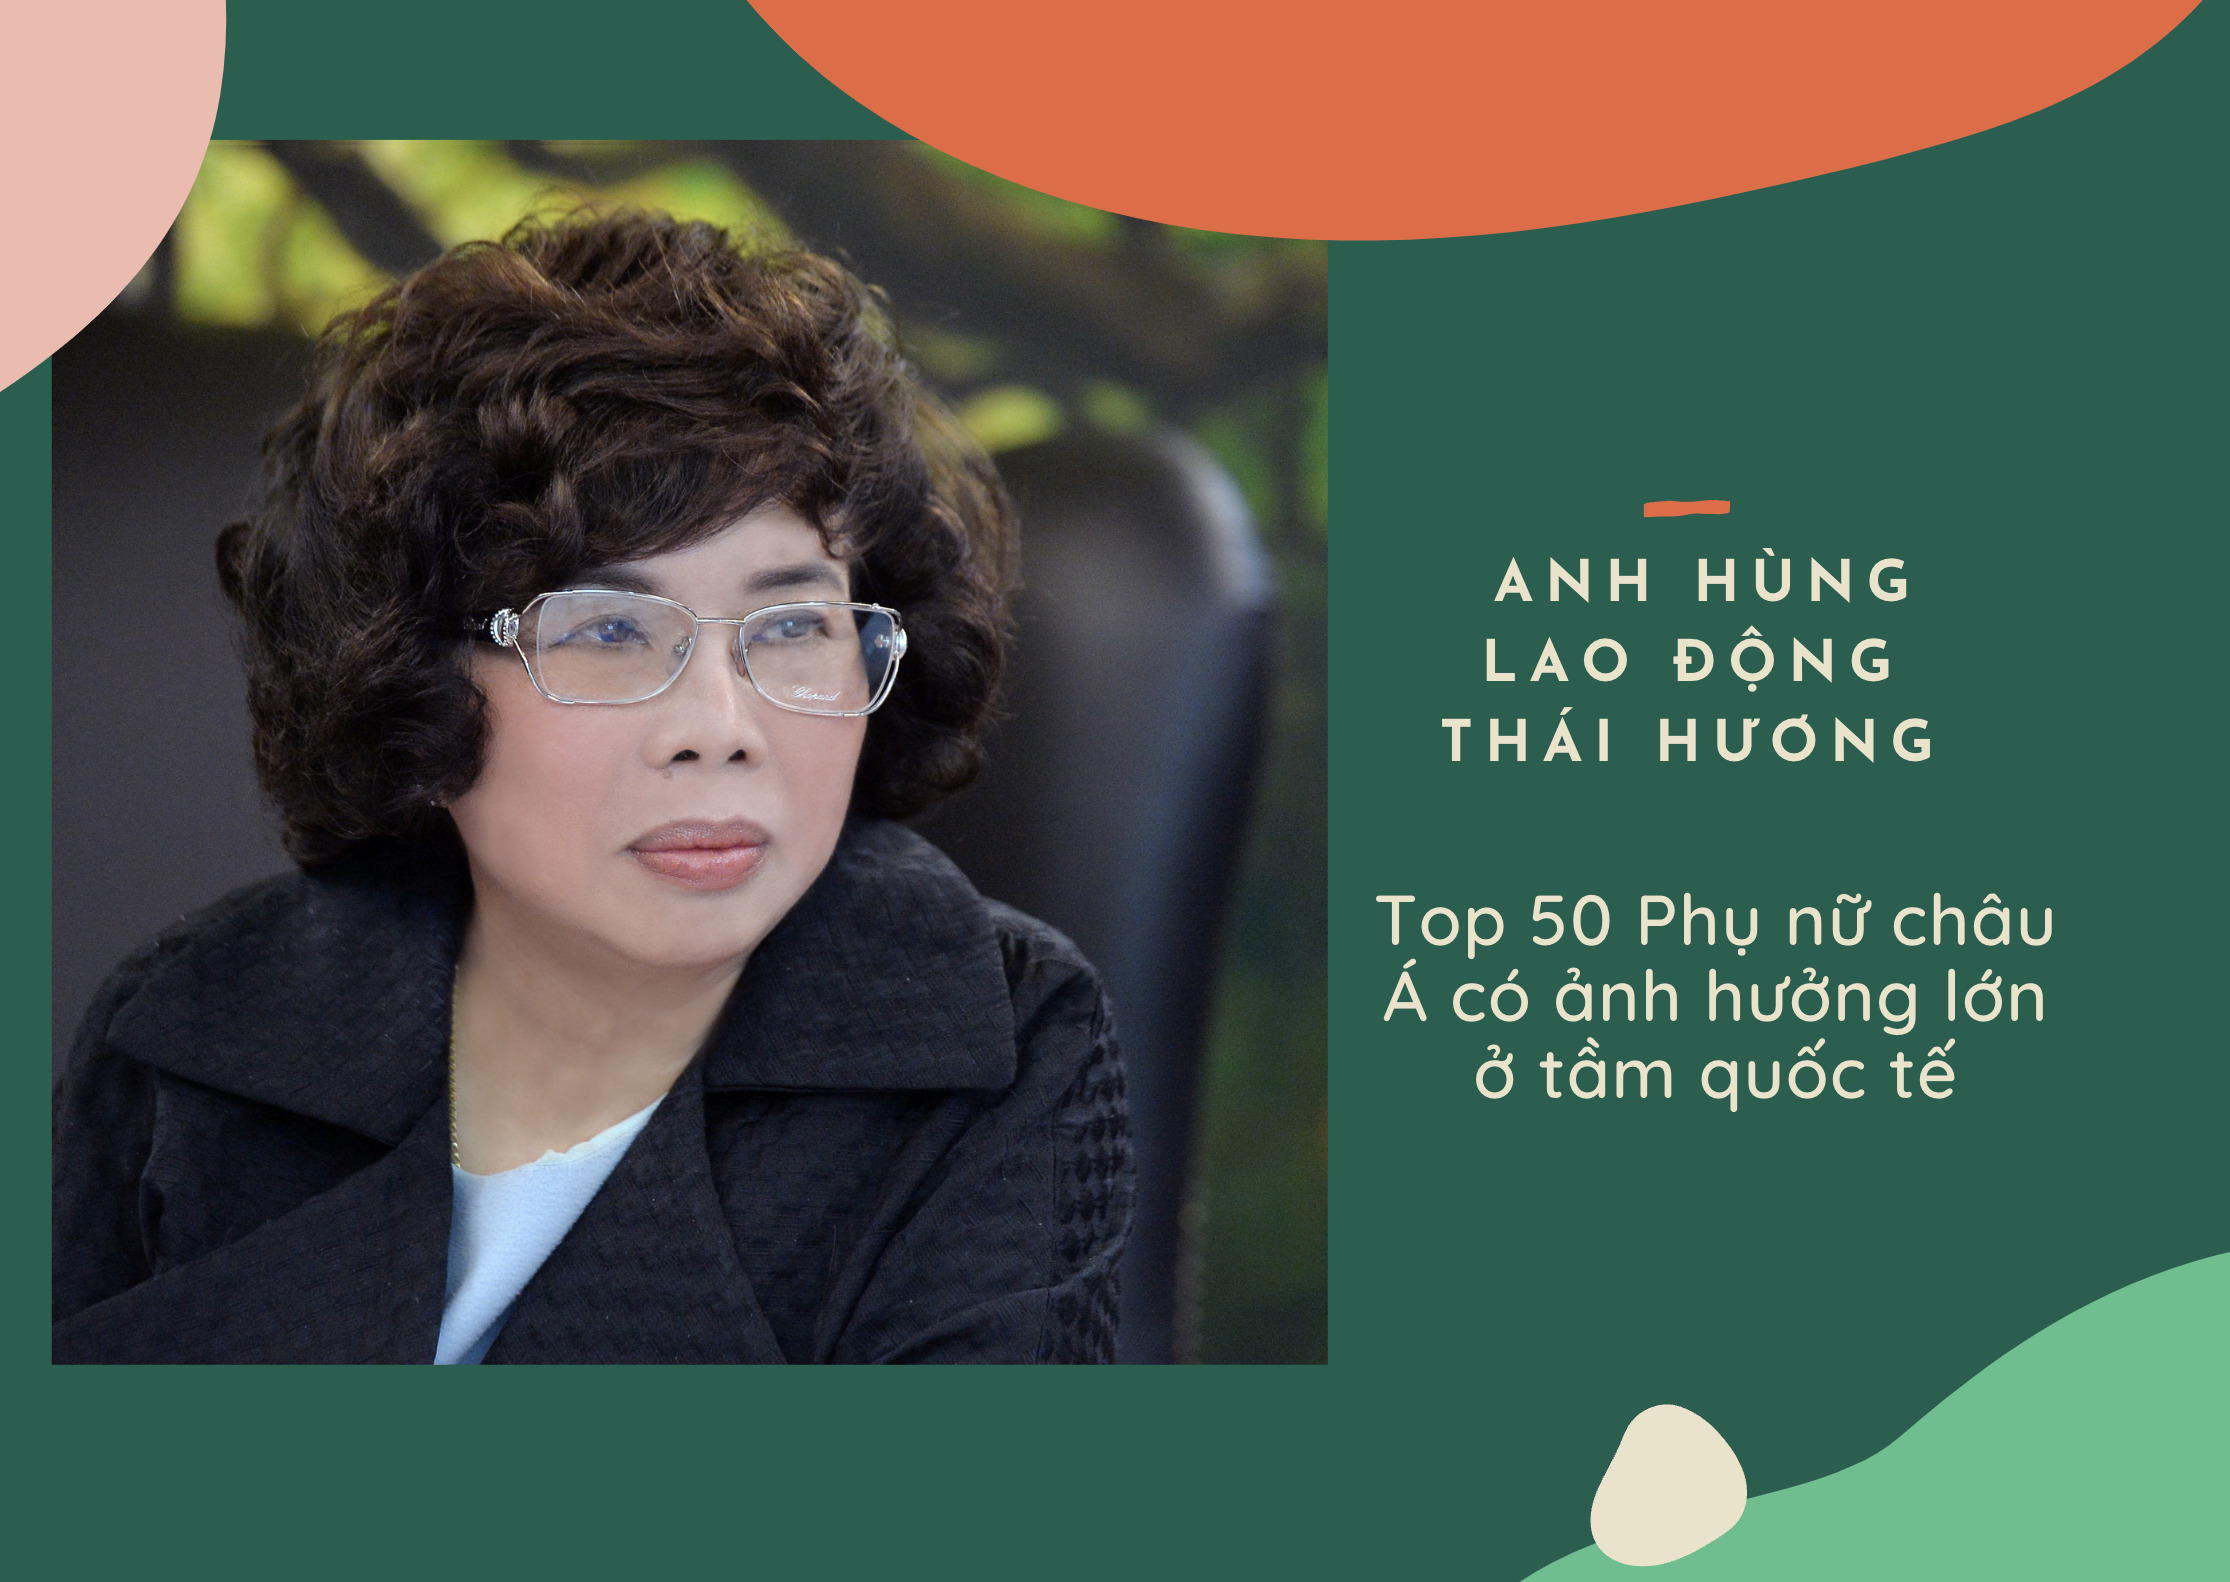 Anh hùng Lao động Thái Hương: Top 50 Phụ nữ châu Á có ảnh hưởng lớn ở tầm quốc tế 0